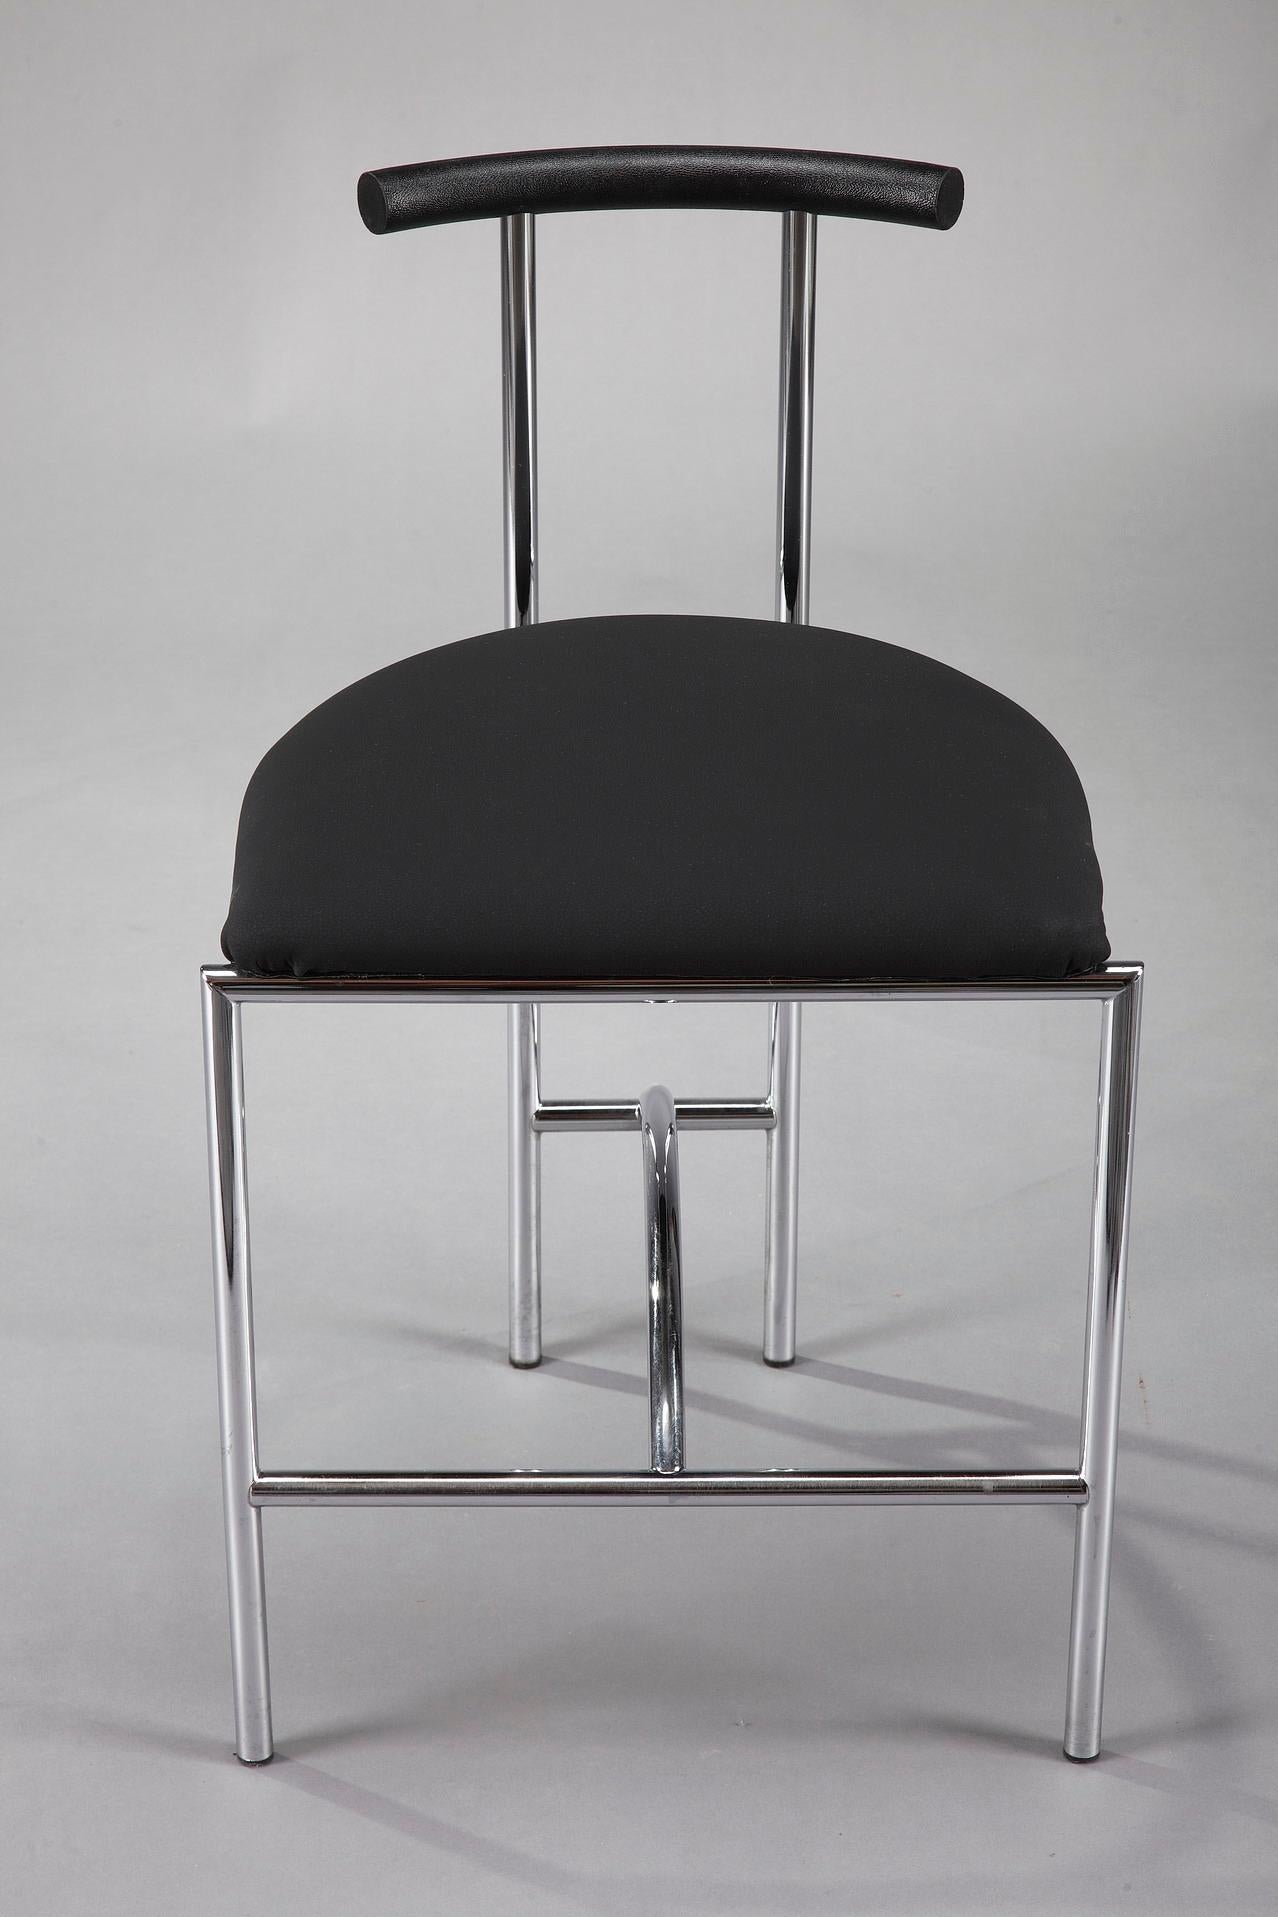 3 Bieffeplast Tokyo Chairs by Rodney Kinsman 4